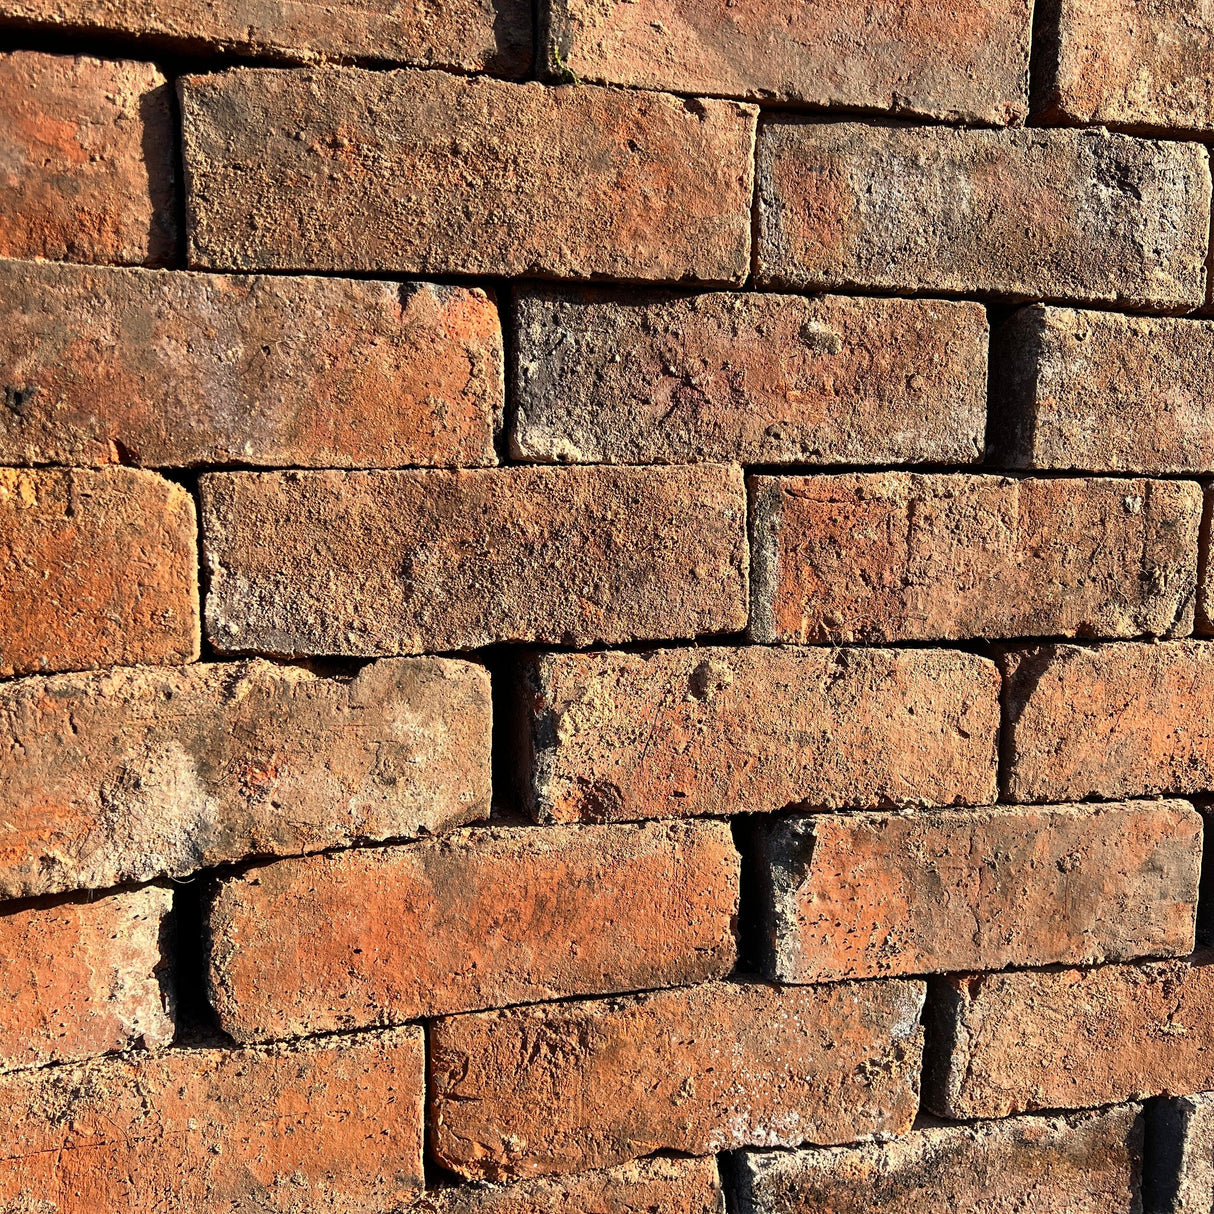 Handmade Brick Wall - Reclaimed Brick Company